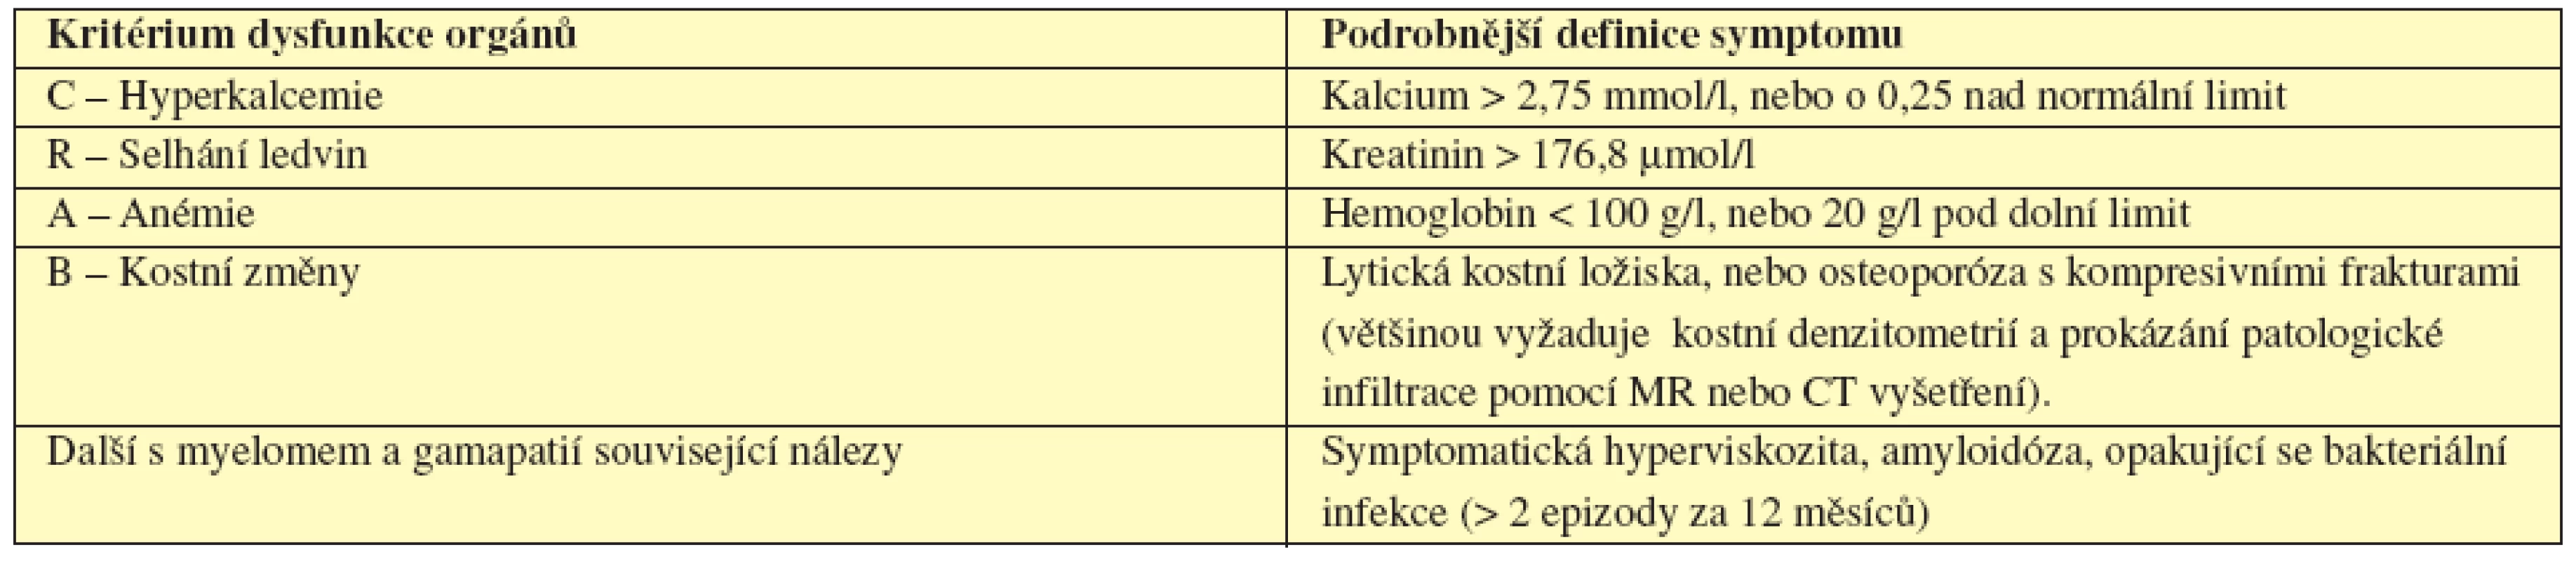 CRAB - Kritéria poškození orgánů či tkání myelomem (International Myeloma Working Group, 2003).